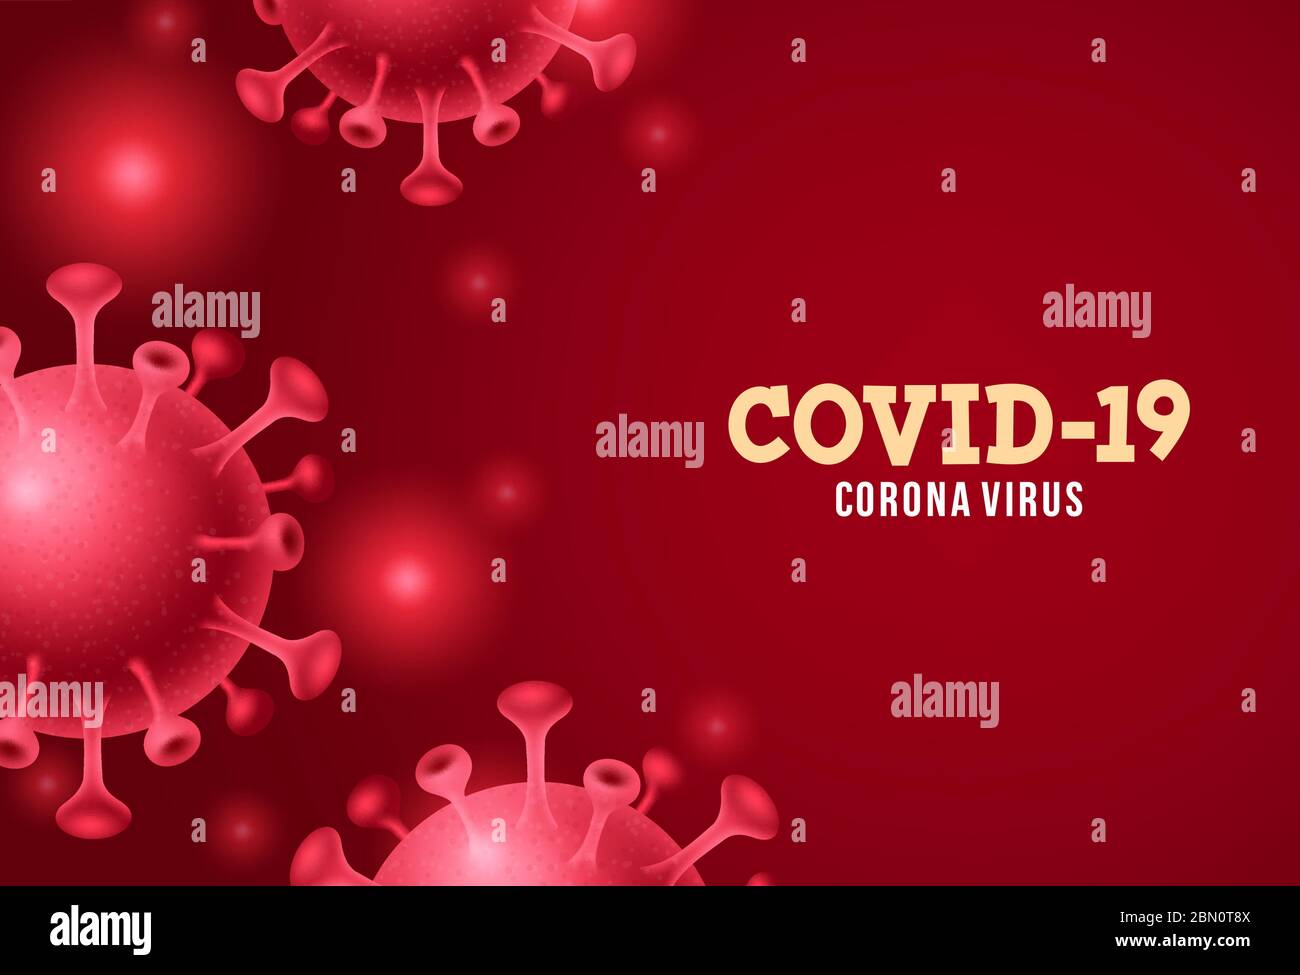 Covid-19 Corona Virus Vektor Hintergrund. Covid-19 Coronavirus Text in rot leeren Raum mit covid19 Corona Virus globale Pandemie. Vektorgrafik. Stock Vektor